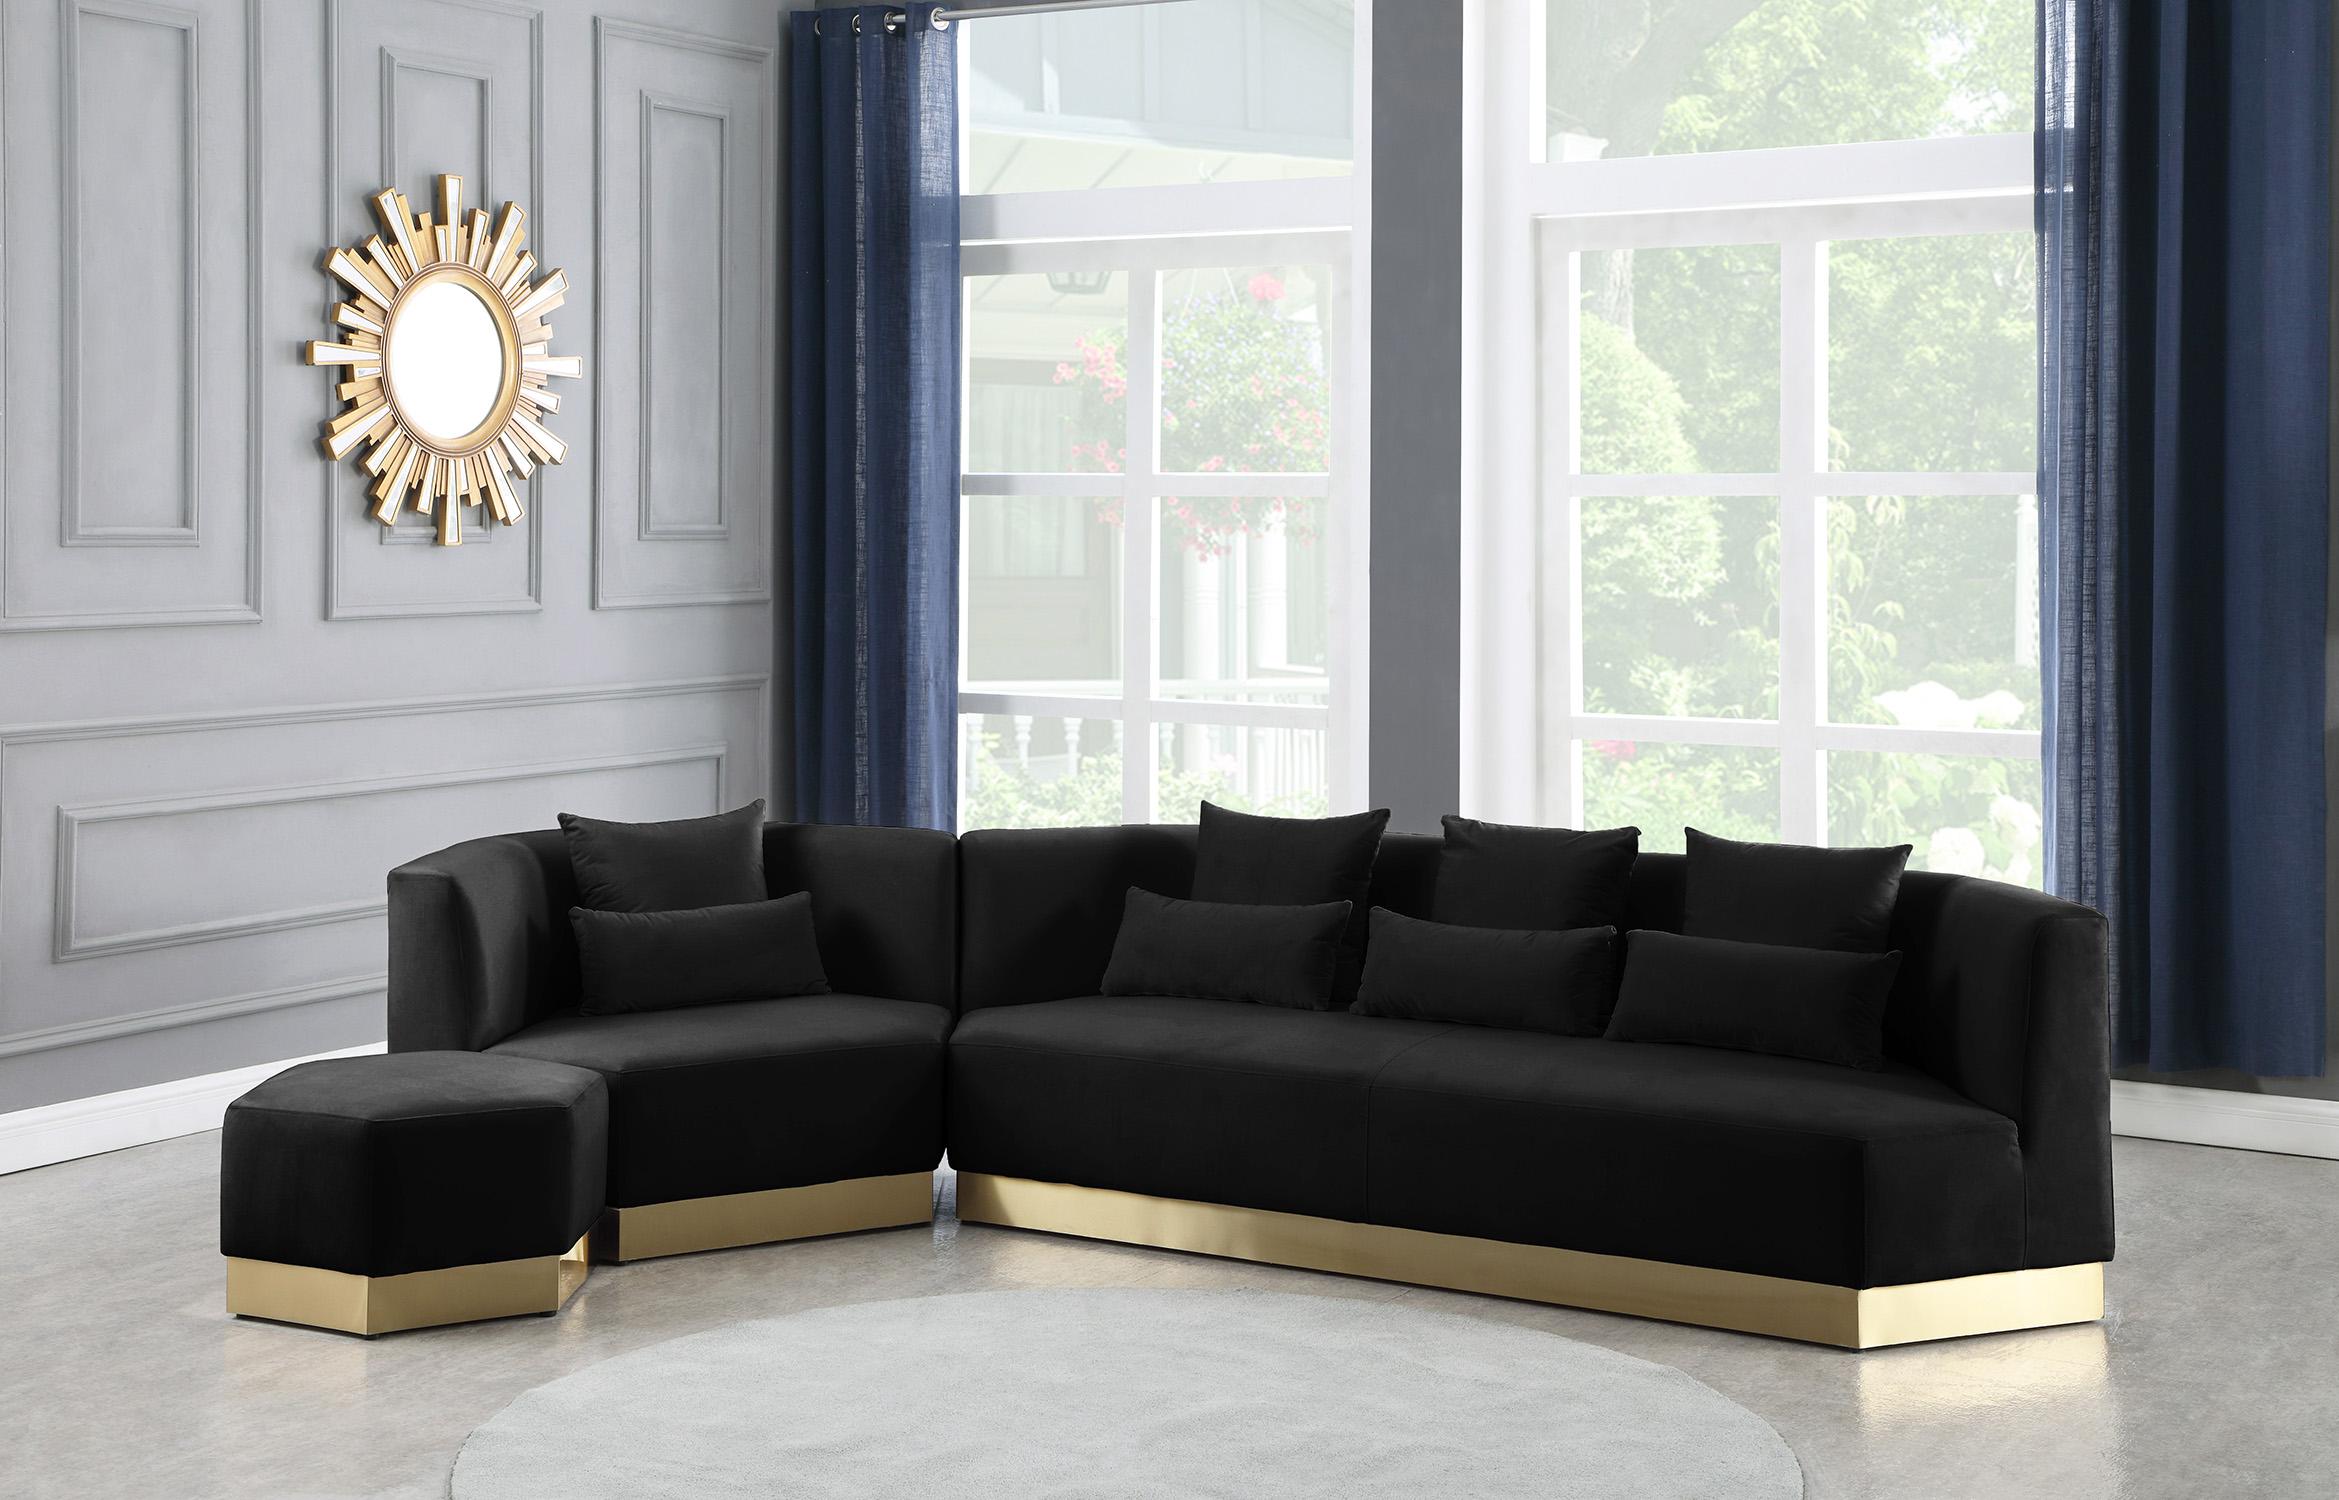 

    
600Black-S Black Velvet Sofa MARQUIS 600Black-S Meridian Contemporary Modern
